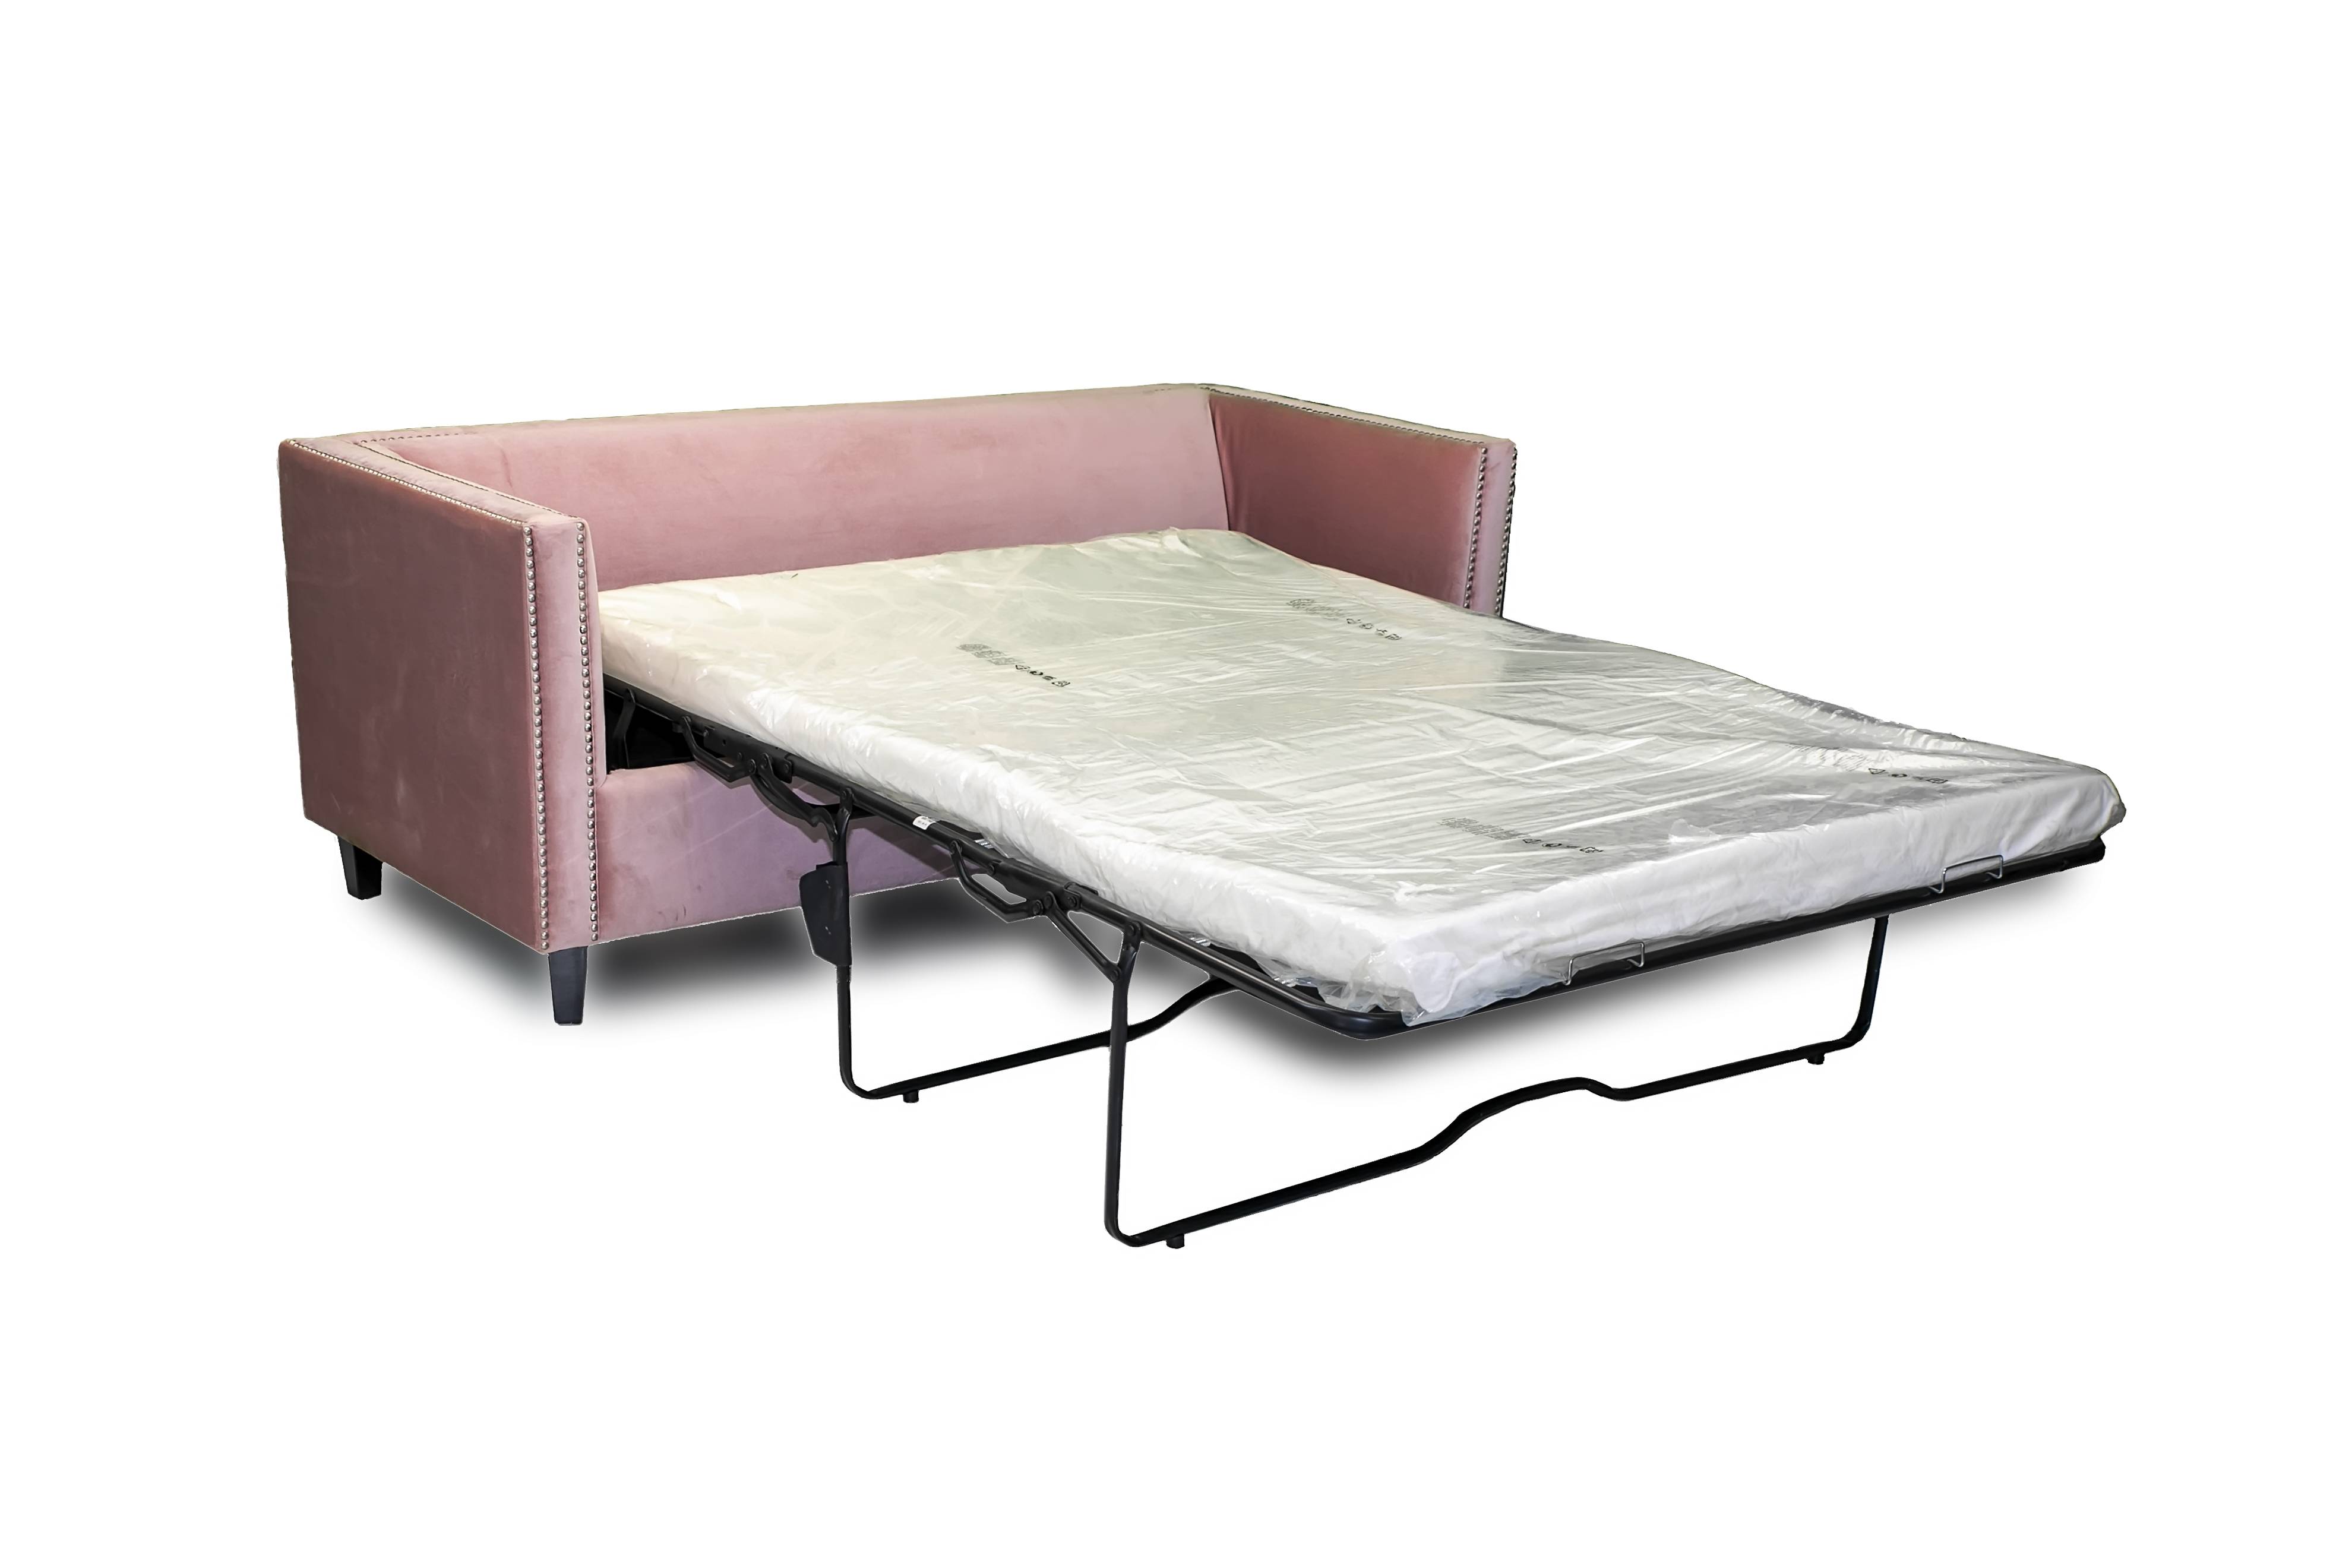 3 Fold High Leg Sofa Bed Mechanisms